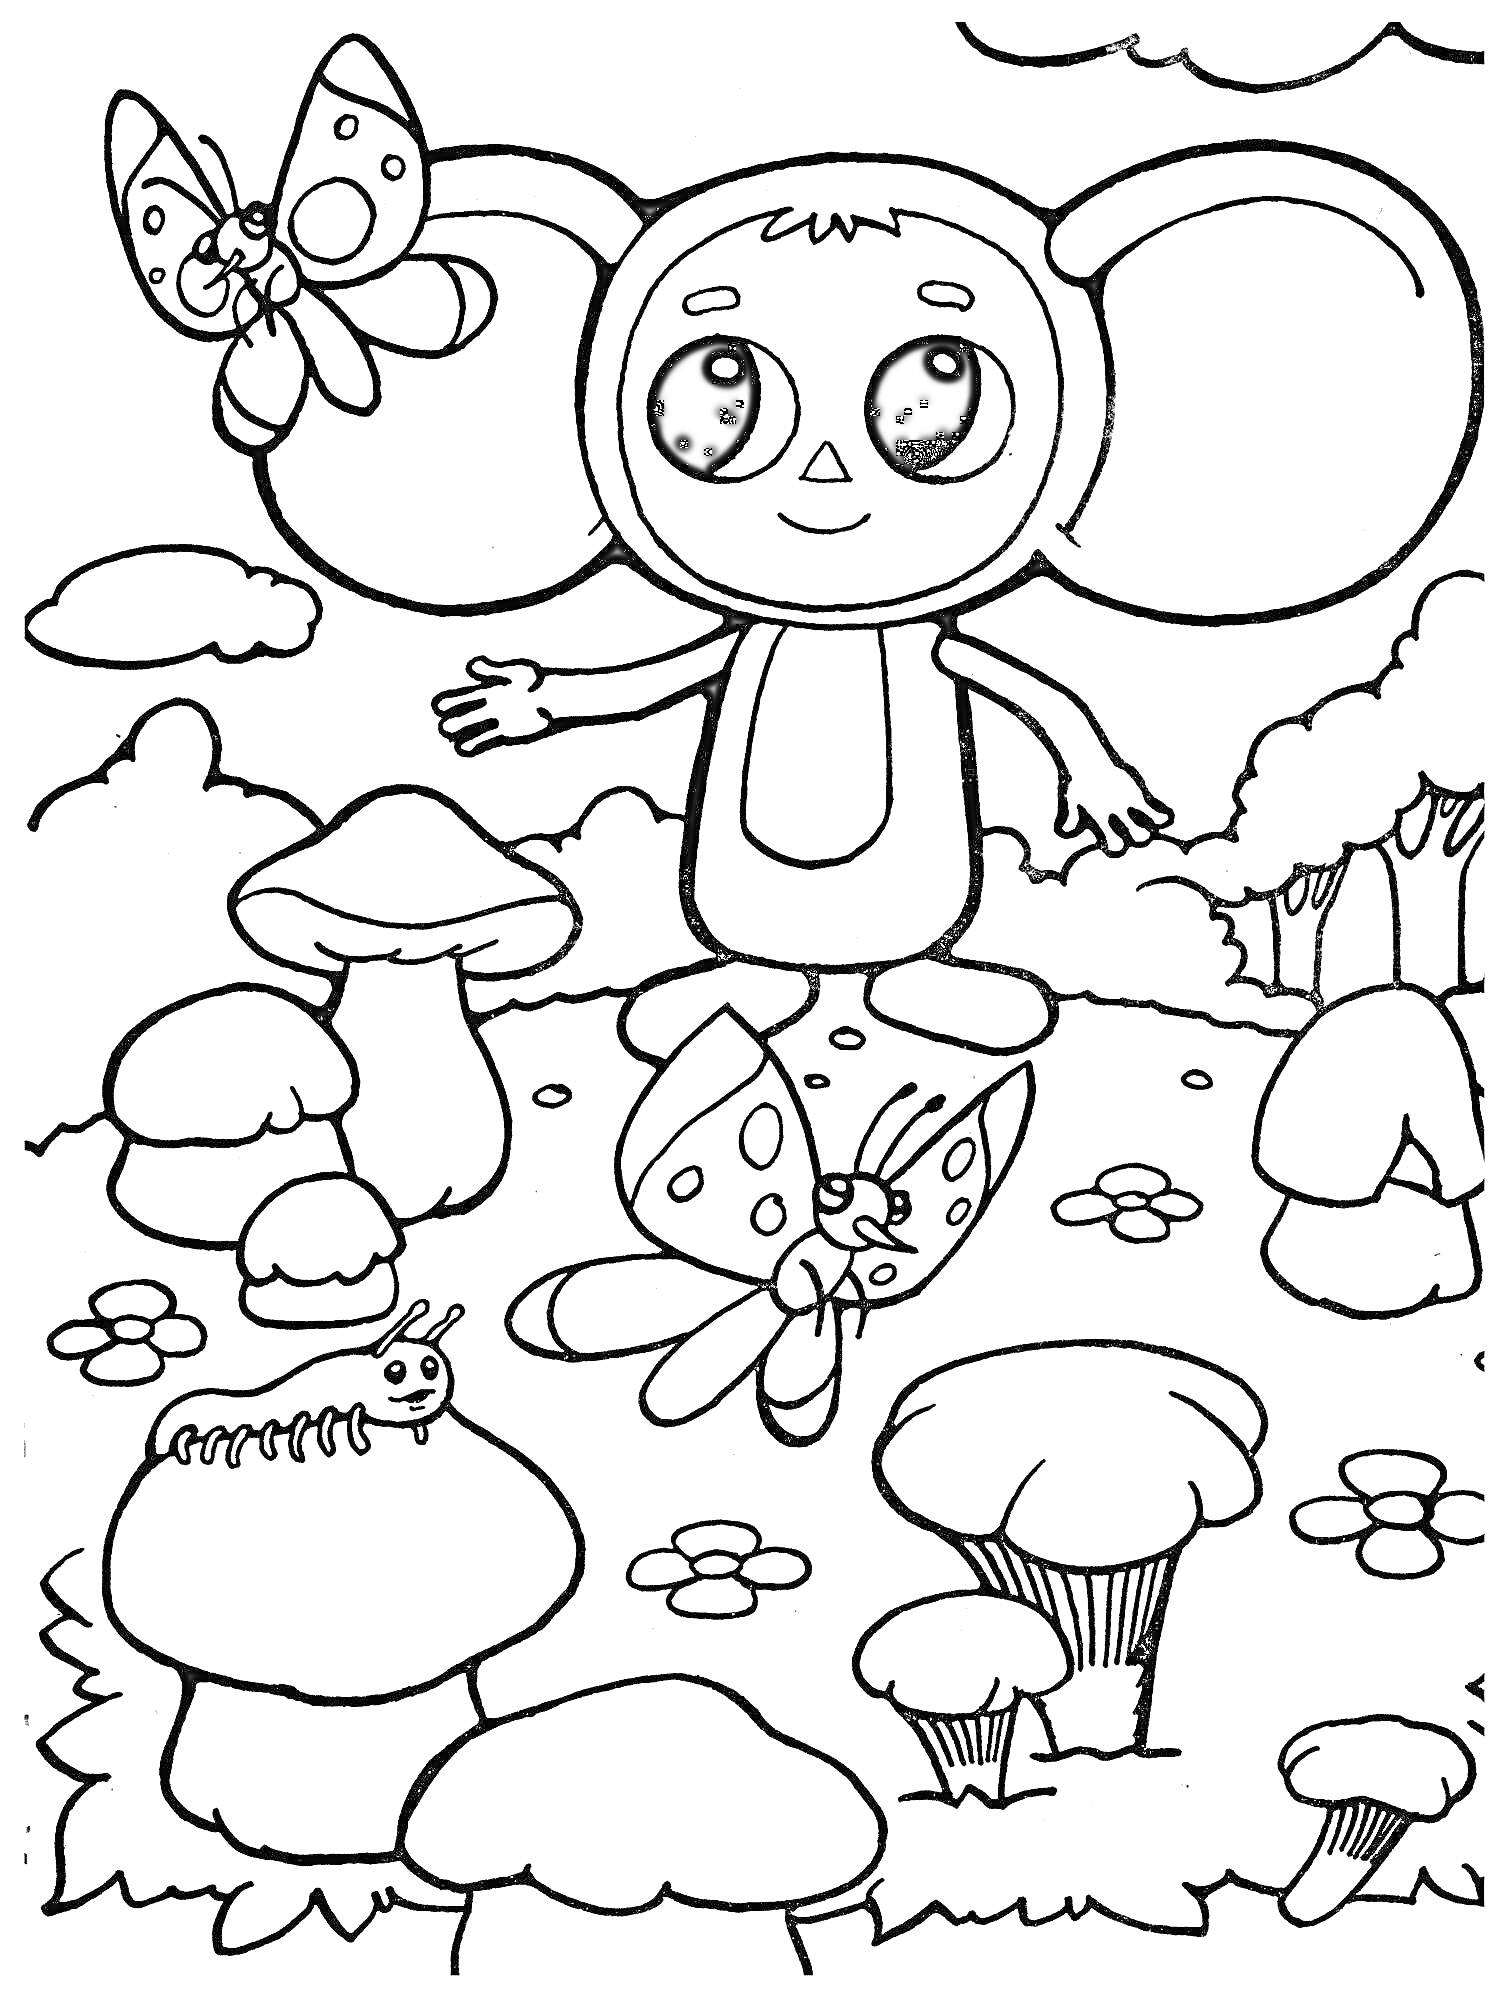 Раскраска Чебурашка с бабочками и гусеницей на полянке с грибами